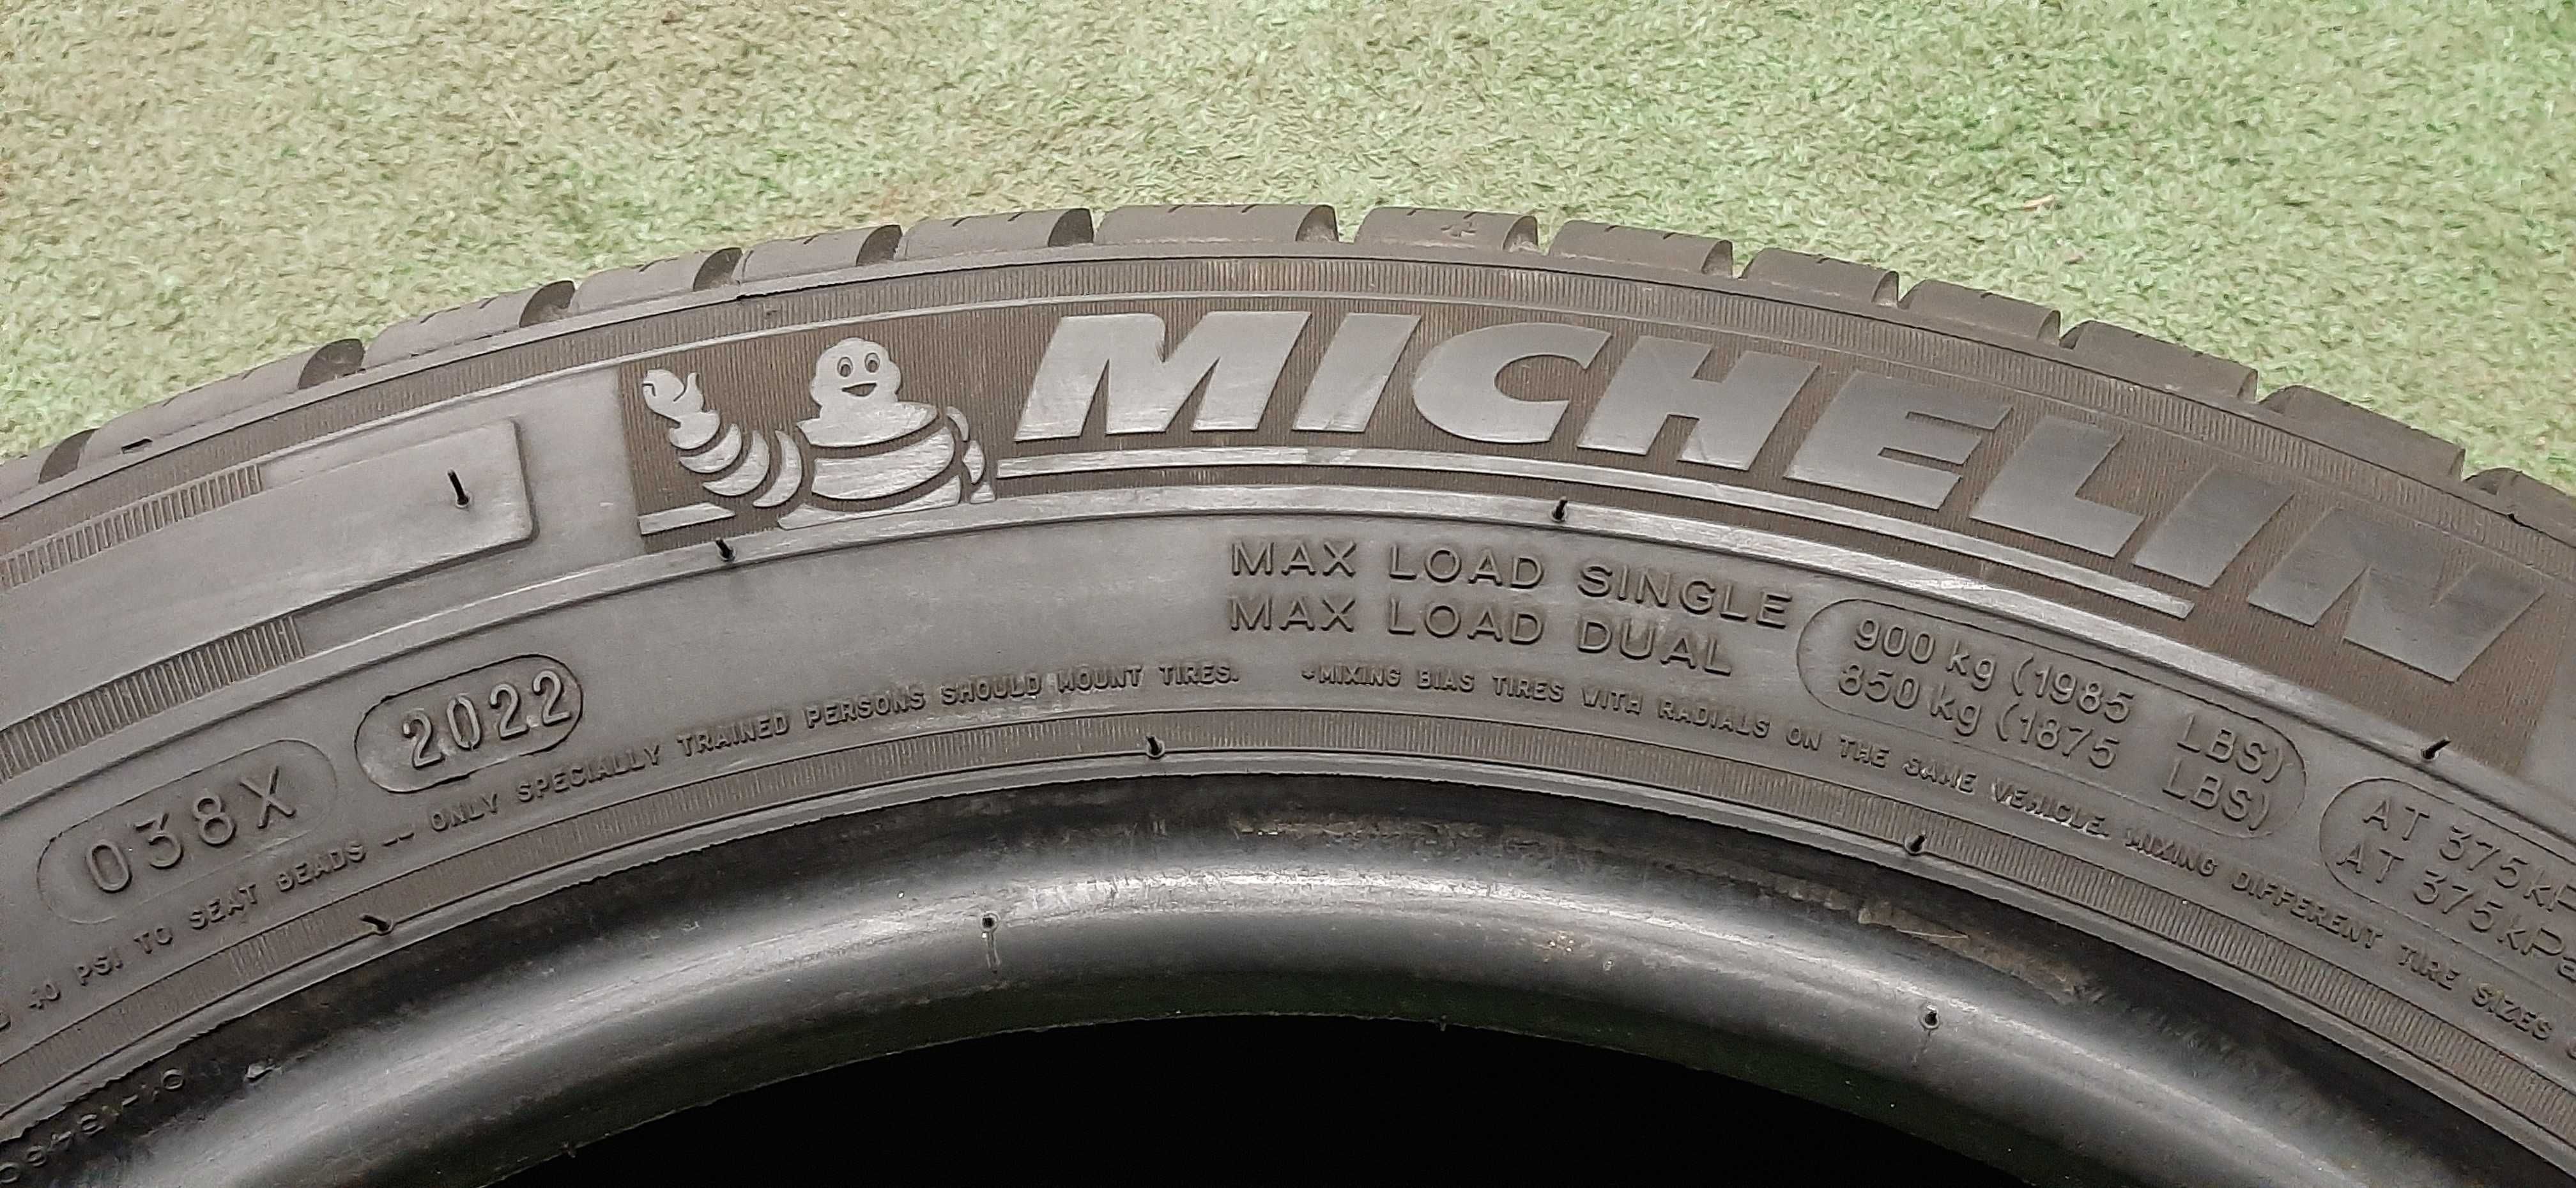 Opony Letnie 215/60/17C Michelin Agilis 2022r. / 8-9mm. / montaż